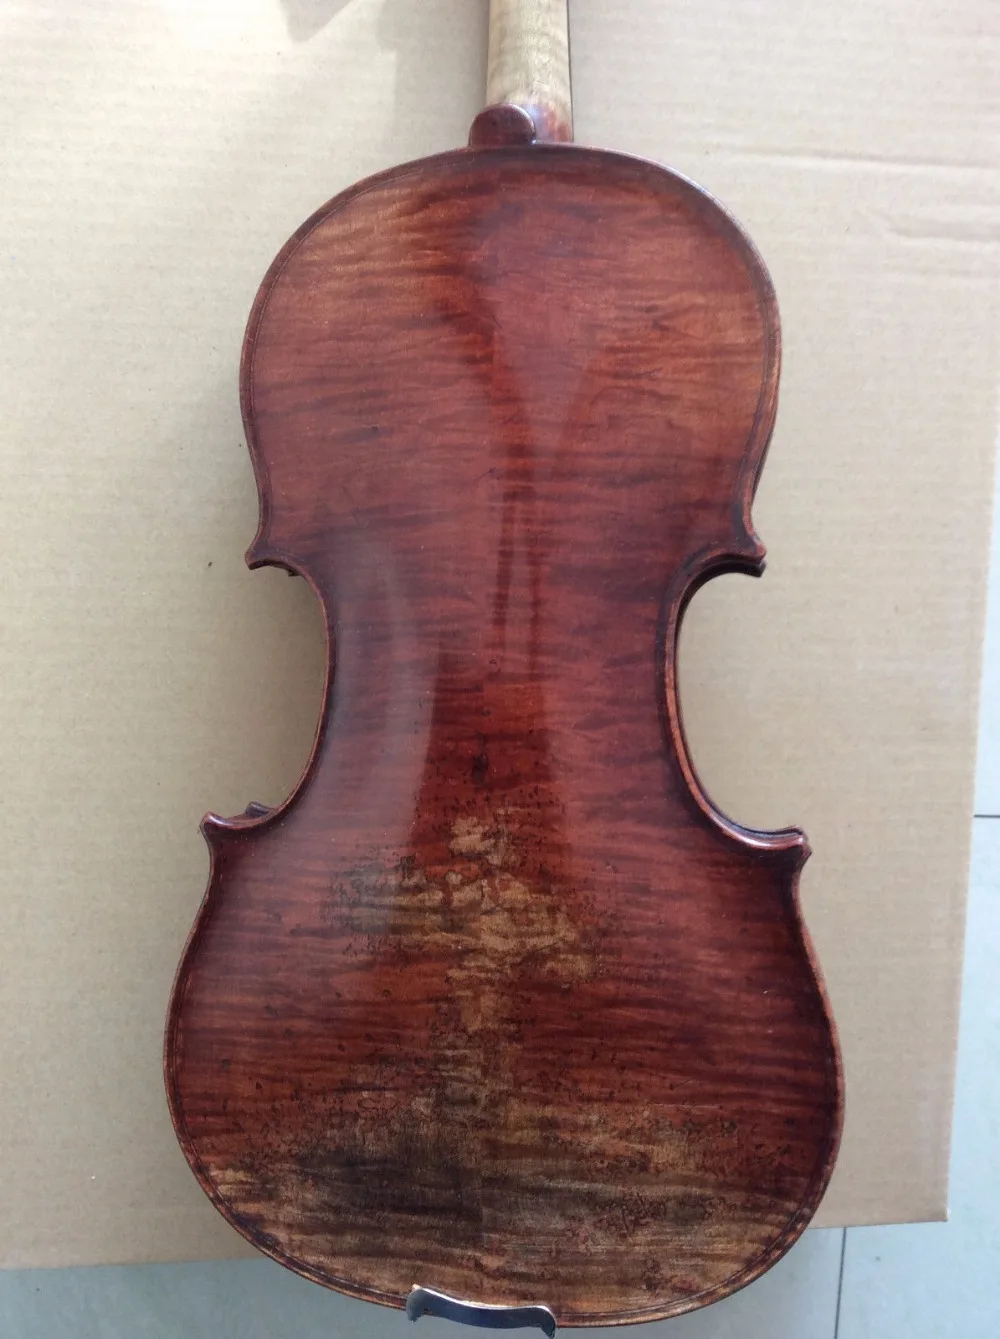 Модель скрипки Stradi размером 4/4 полностью ручная работа топ из огненной кленовой